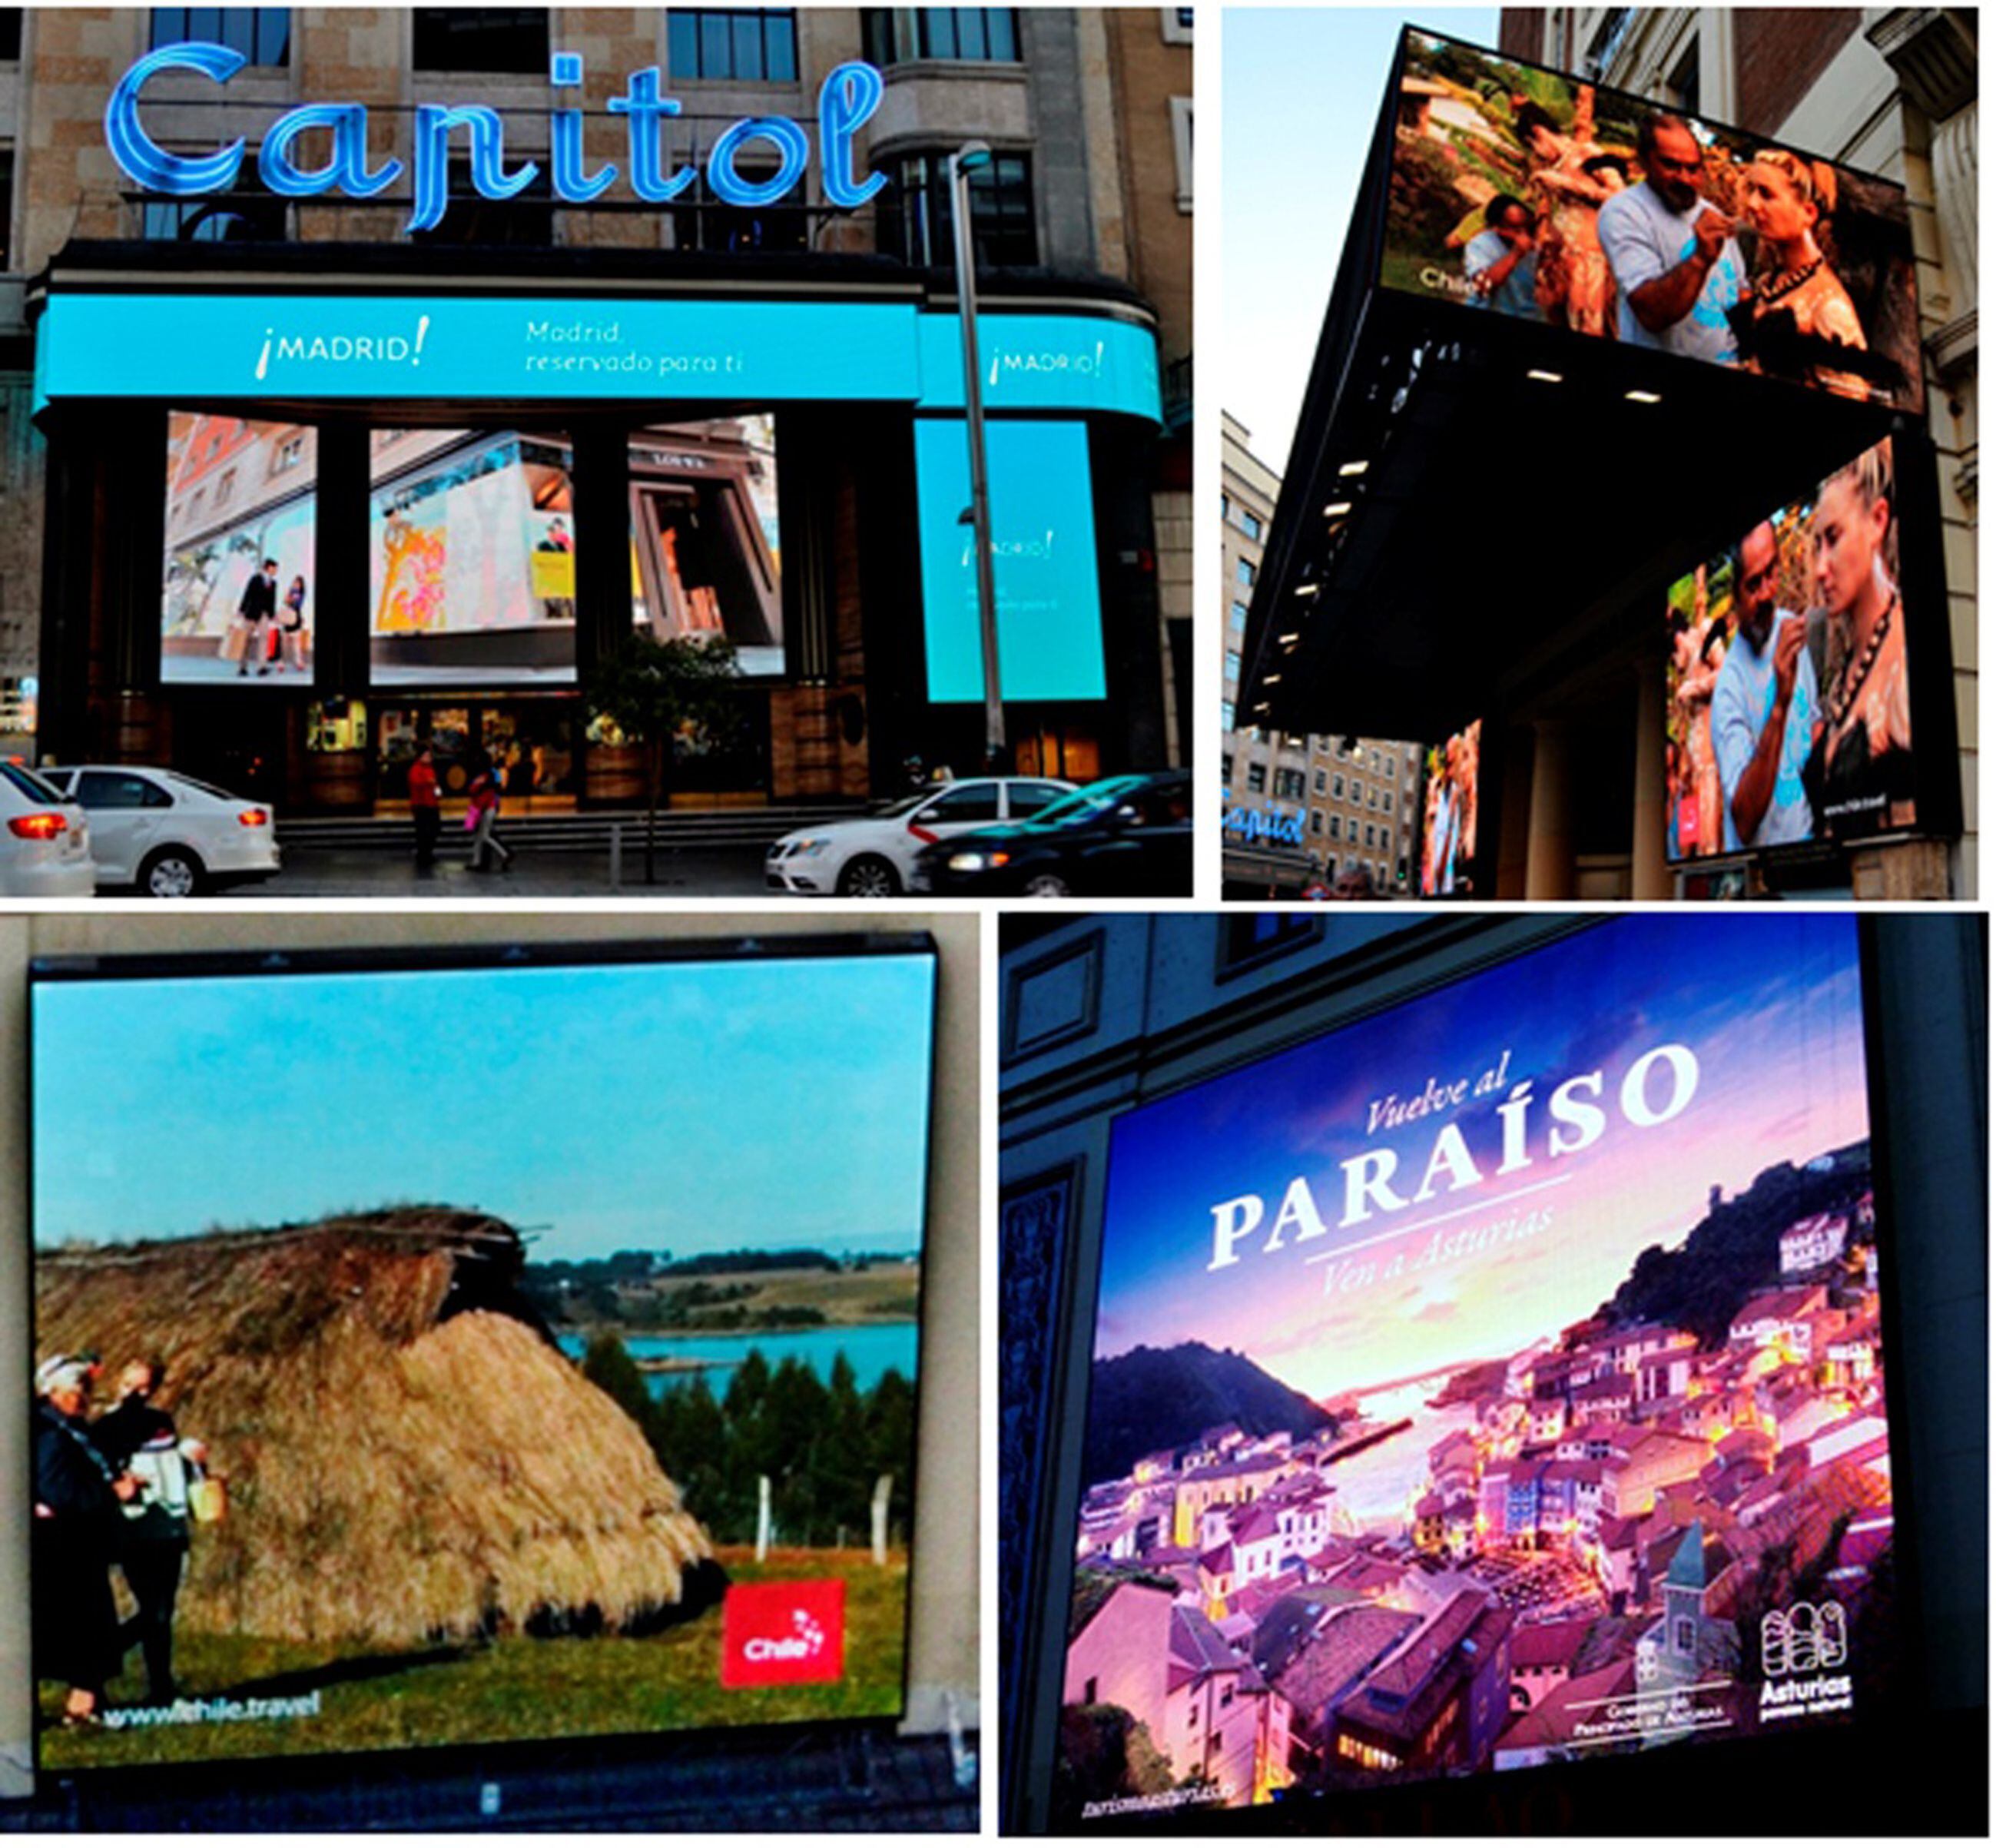 Ejemplos de campañas publicitarias realizadas en pantallas digitales que recurren a mostrar imágenes en movimiento de otros lugares lejanos espacial y temporalmente, haciendo que la ciudadanía viaje a ellos virtualmente